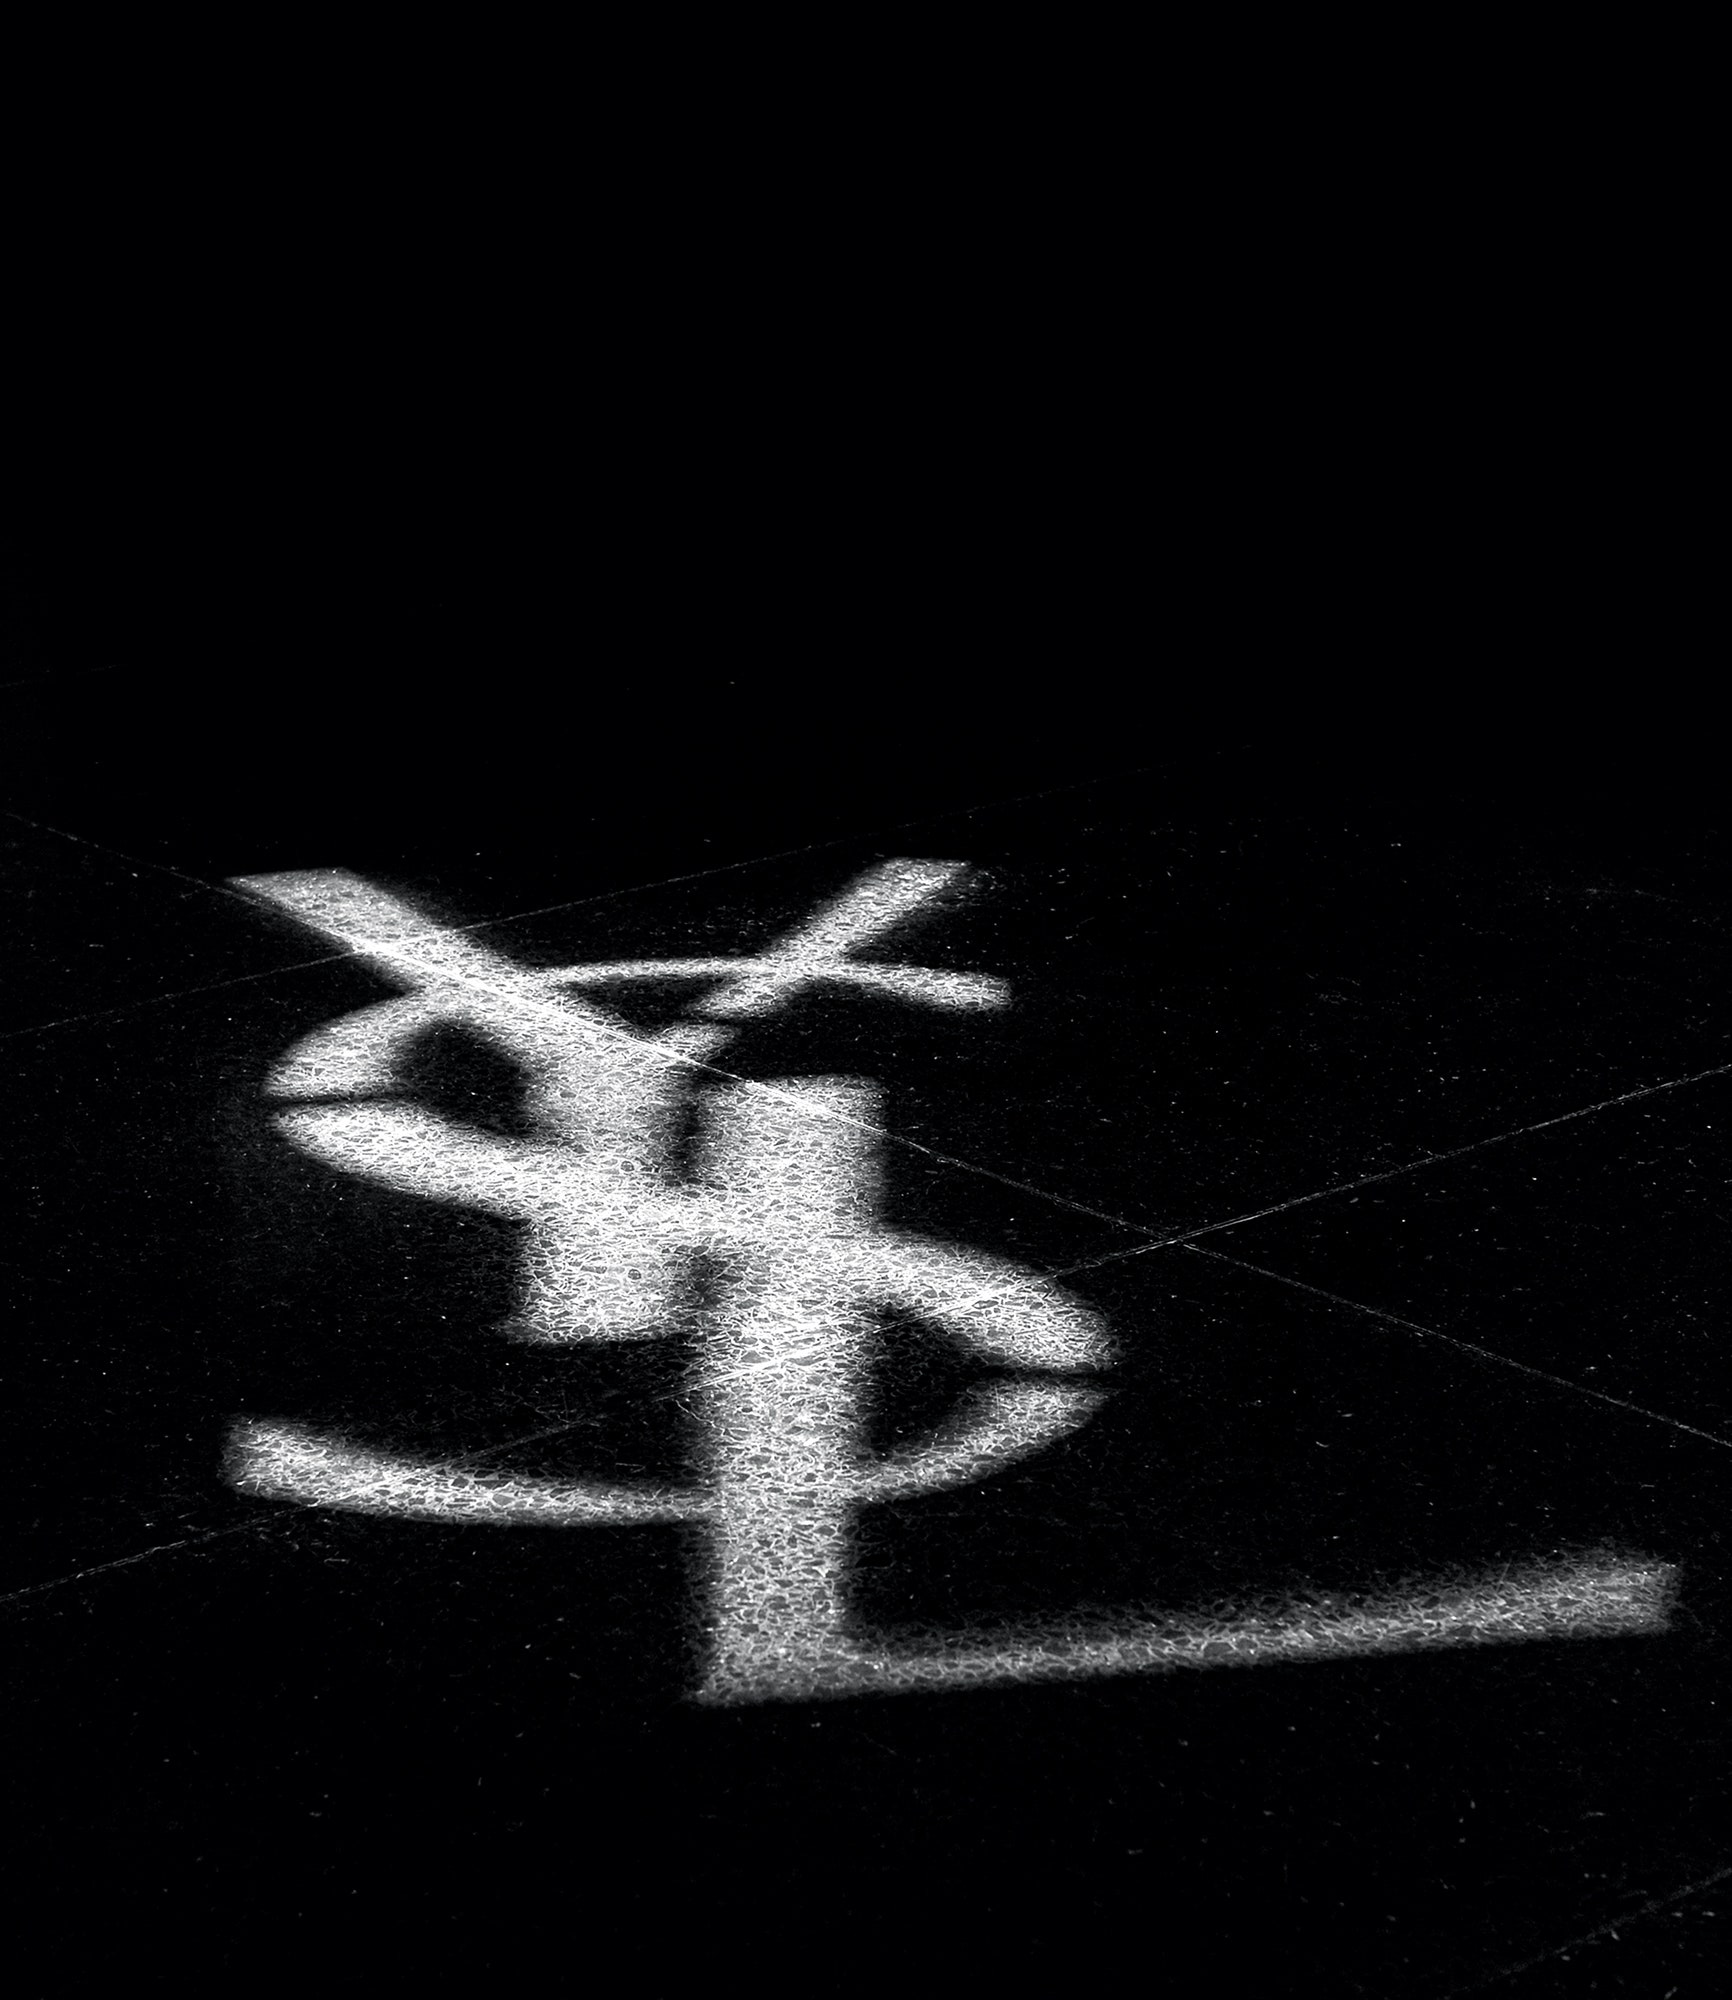 Sự hình thành và phát triển thương hiệu Yves Saint Laurent